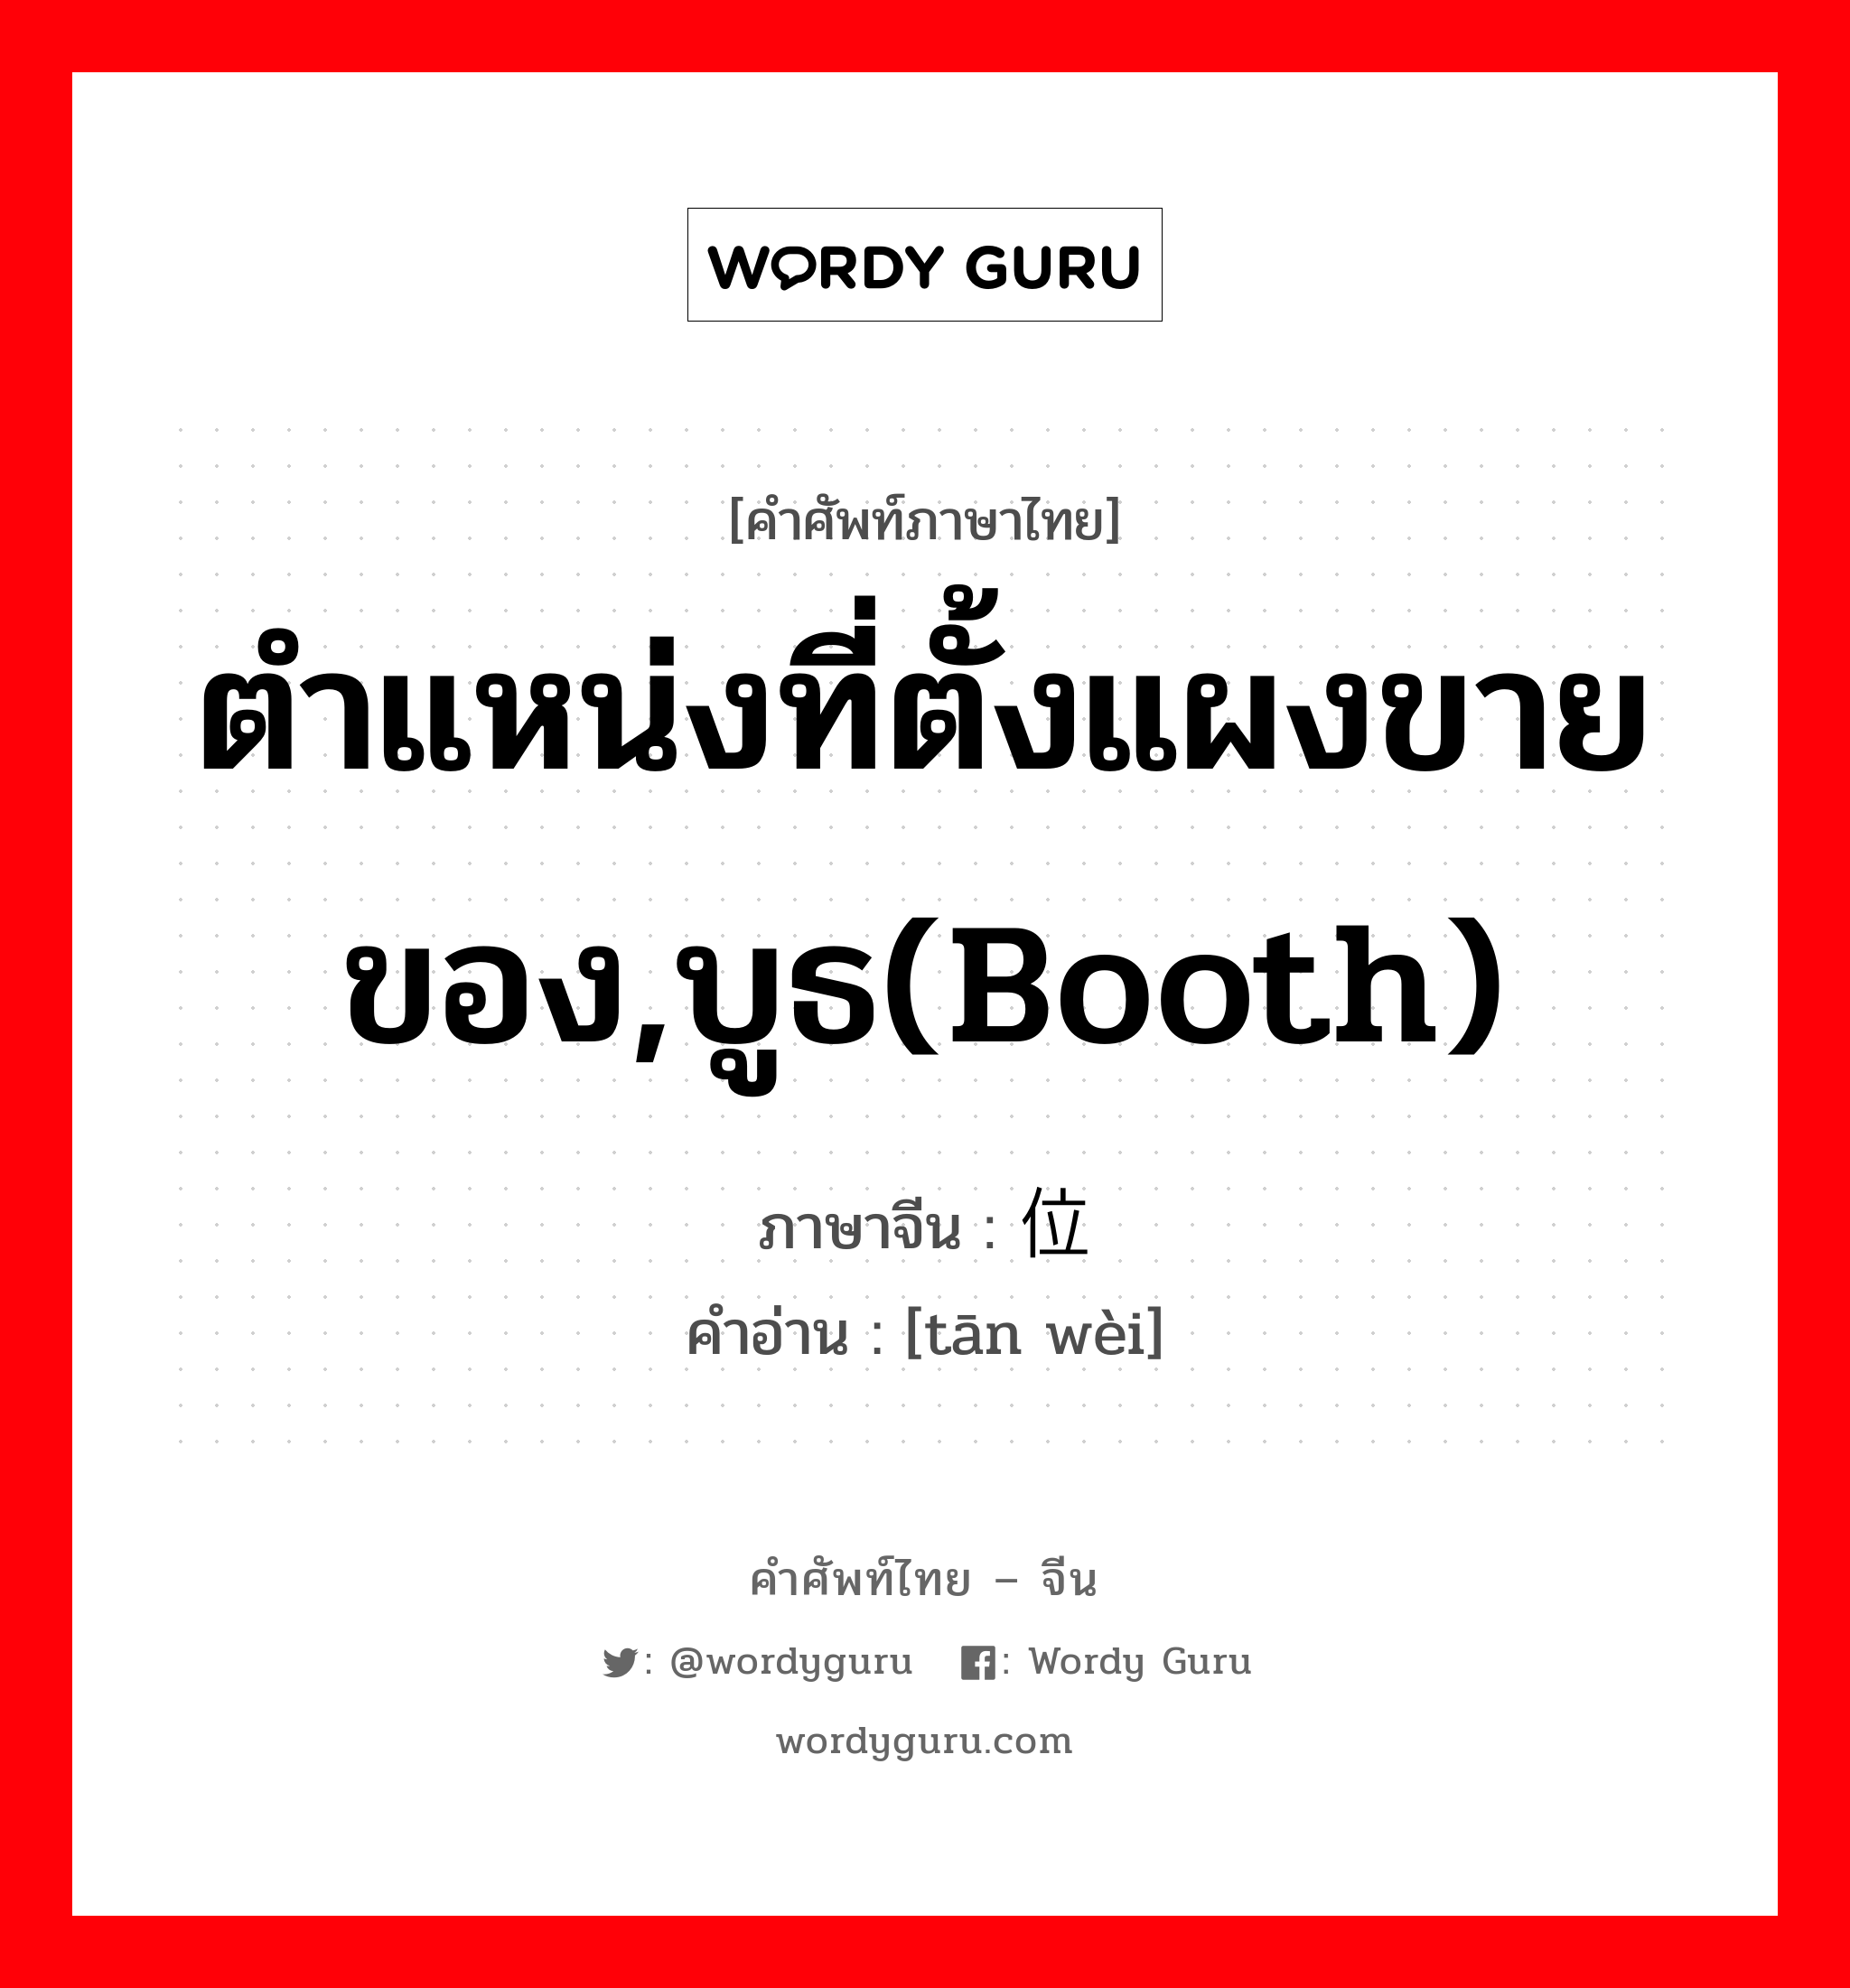 ตำแหน่งที่ตั้งแผงขายของ,บูธ(booth) ภาษาจีนคืออะไร, คำศัพท์ภาษาไทย - จีน ตำแหน่งที่ตั้งแผงขายของ,บูธ(booth) ภาษาจีน 摊位 คำอ่าน [tān wèi]